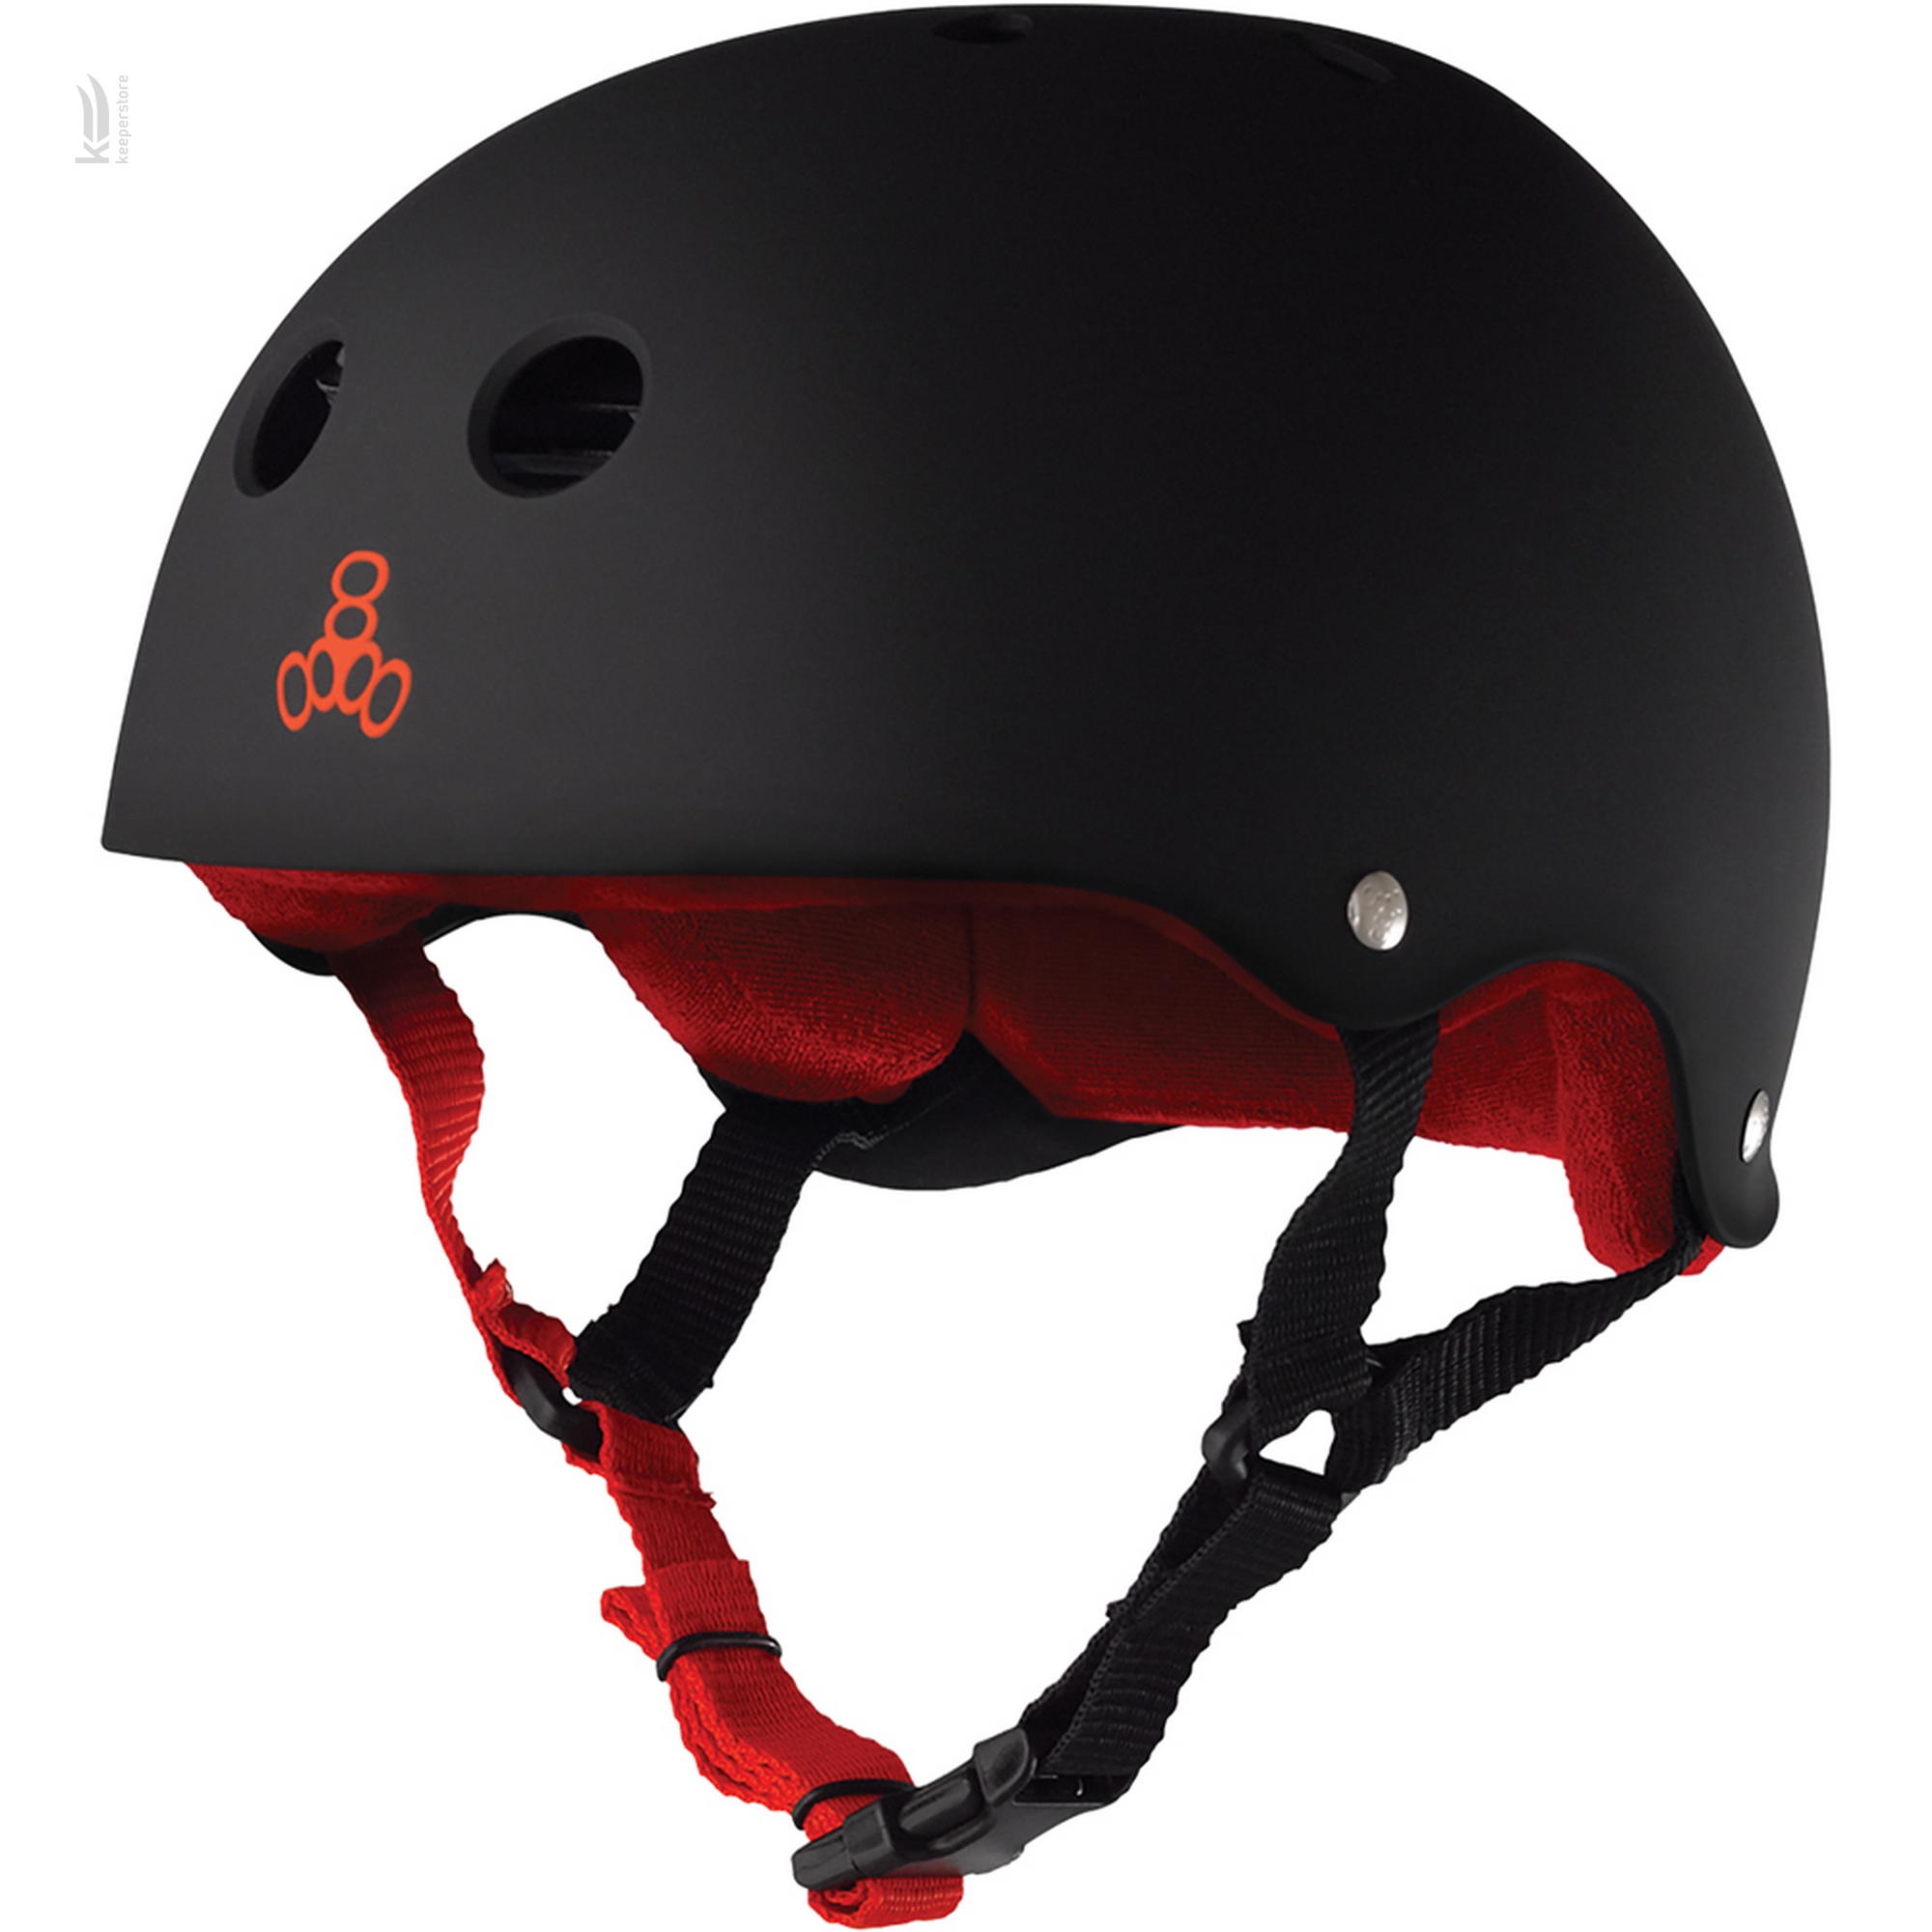 Triple8 Sweatsaver Helmet Black w/ Red (S)